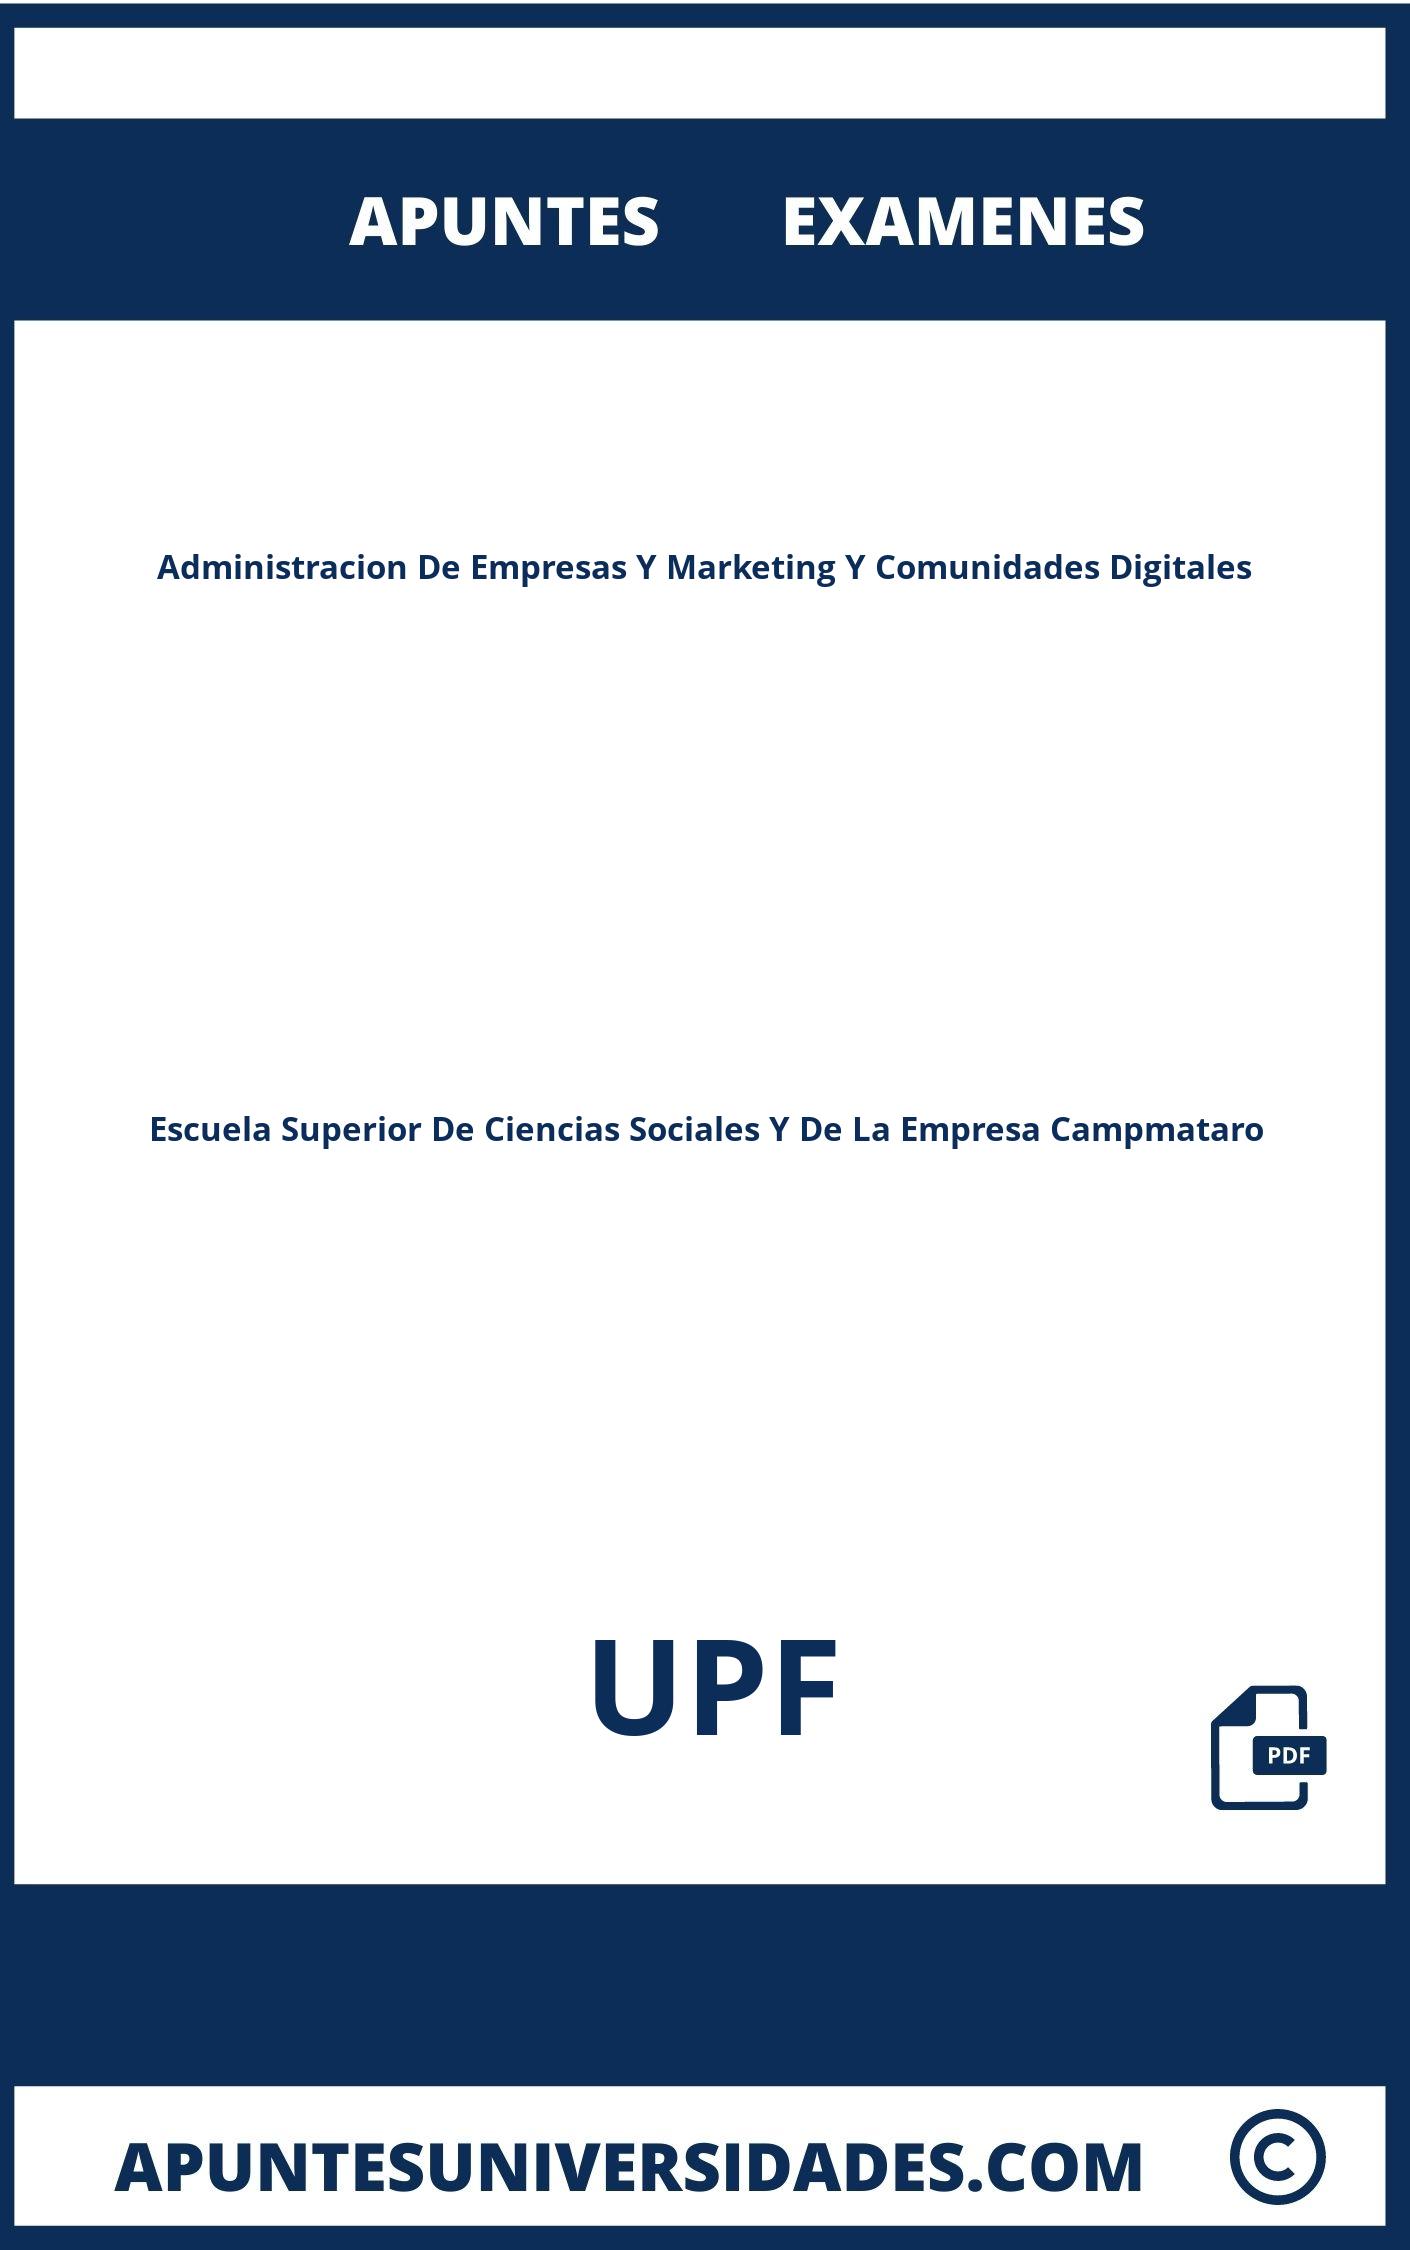 Examenes y Apuntes de Administracion De Empresas Y Marketing Y Comunidades Digitales UPF